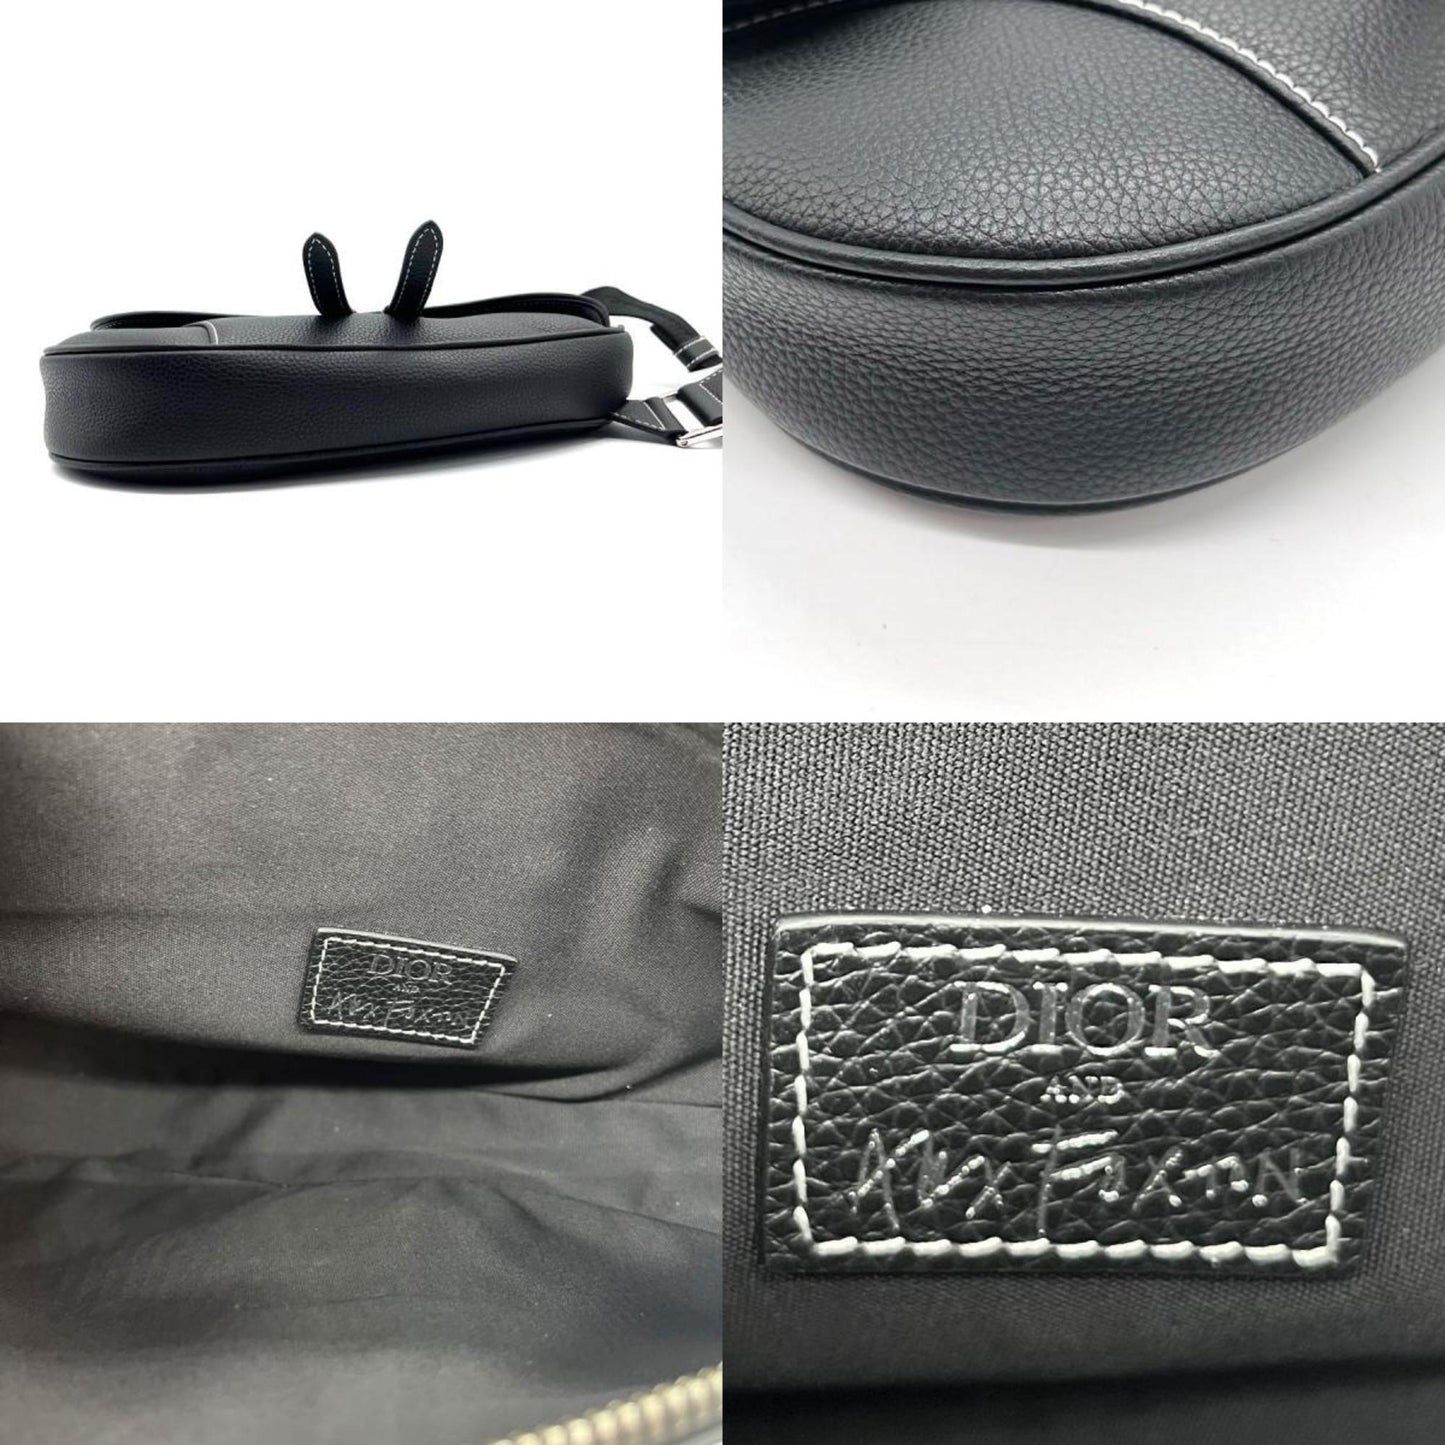 Dior Men's Sleek Leather Saddle Bag in Black